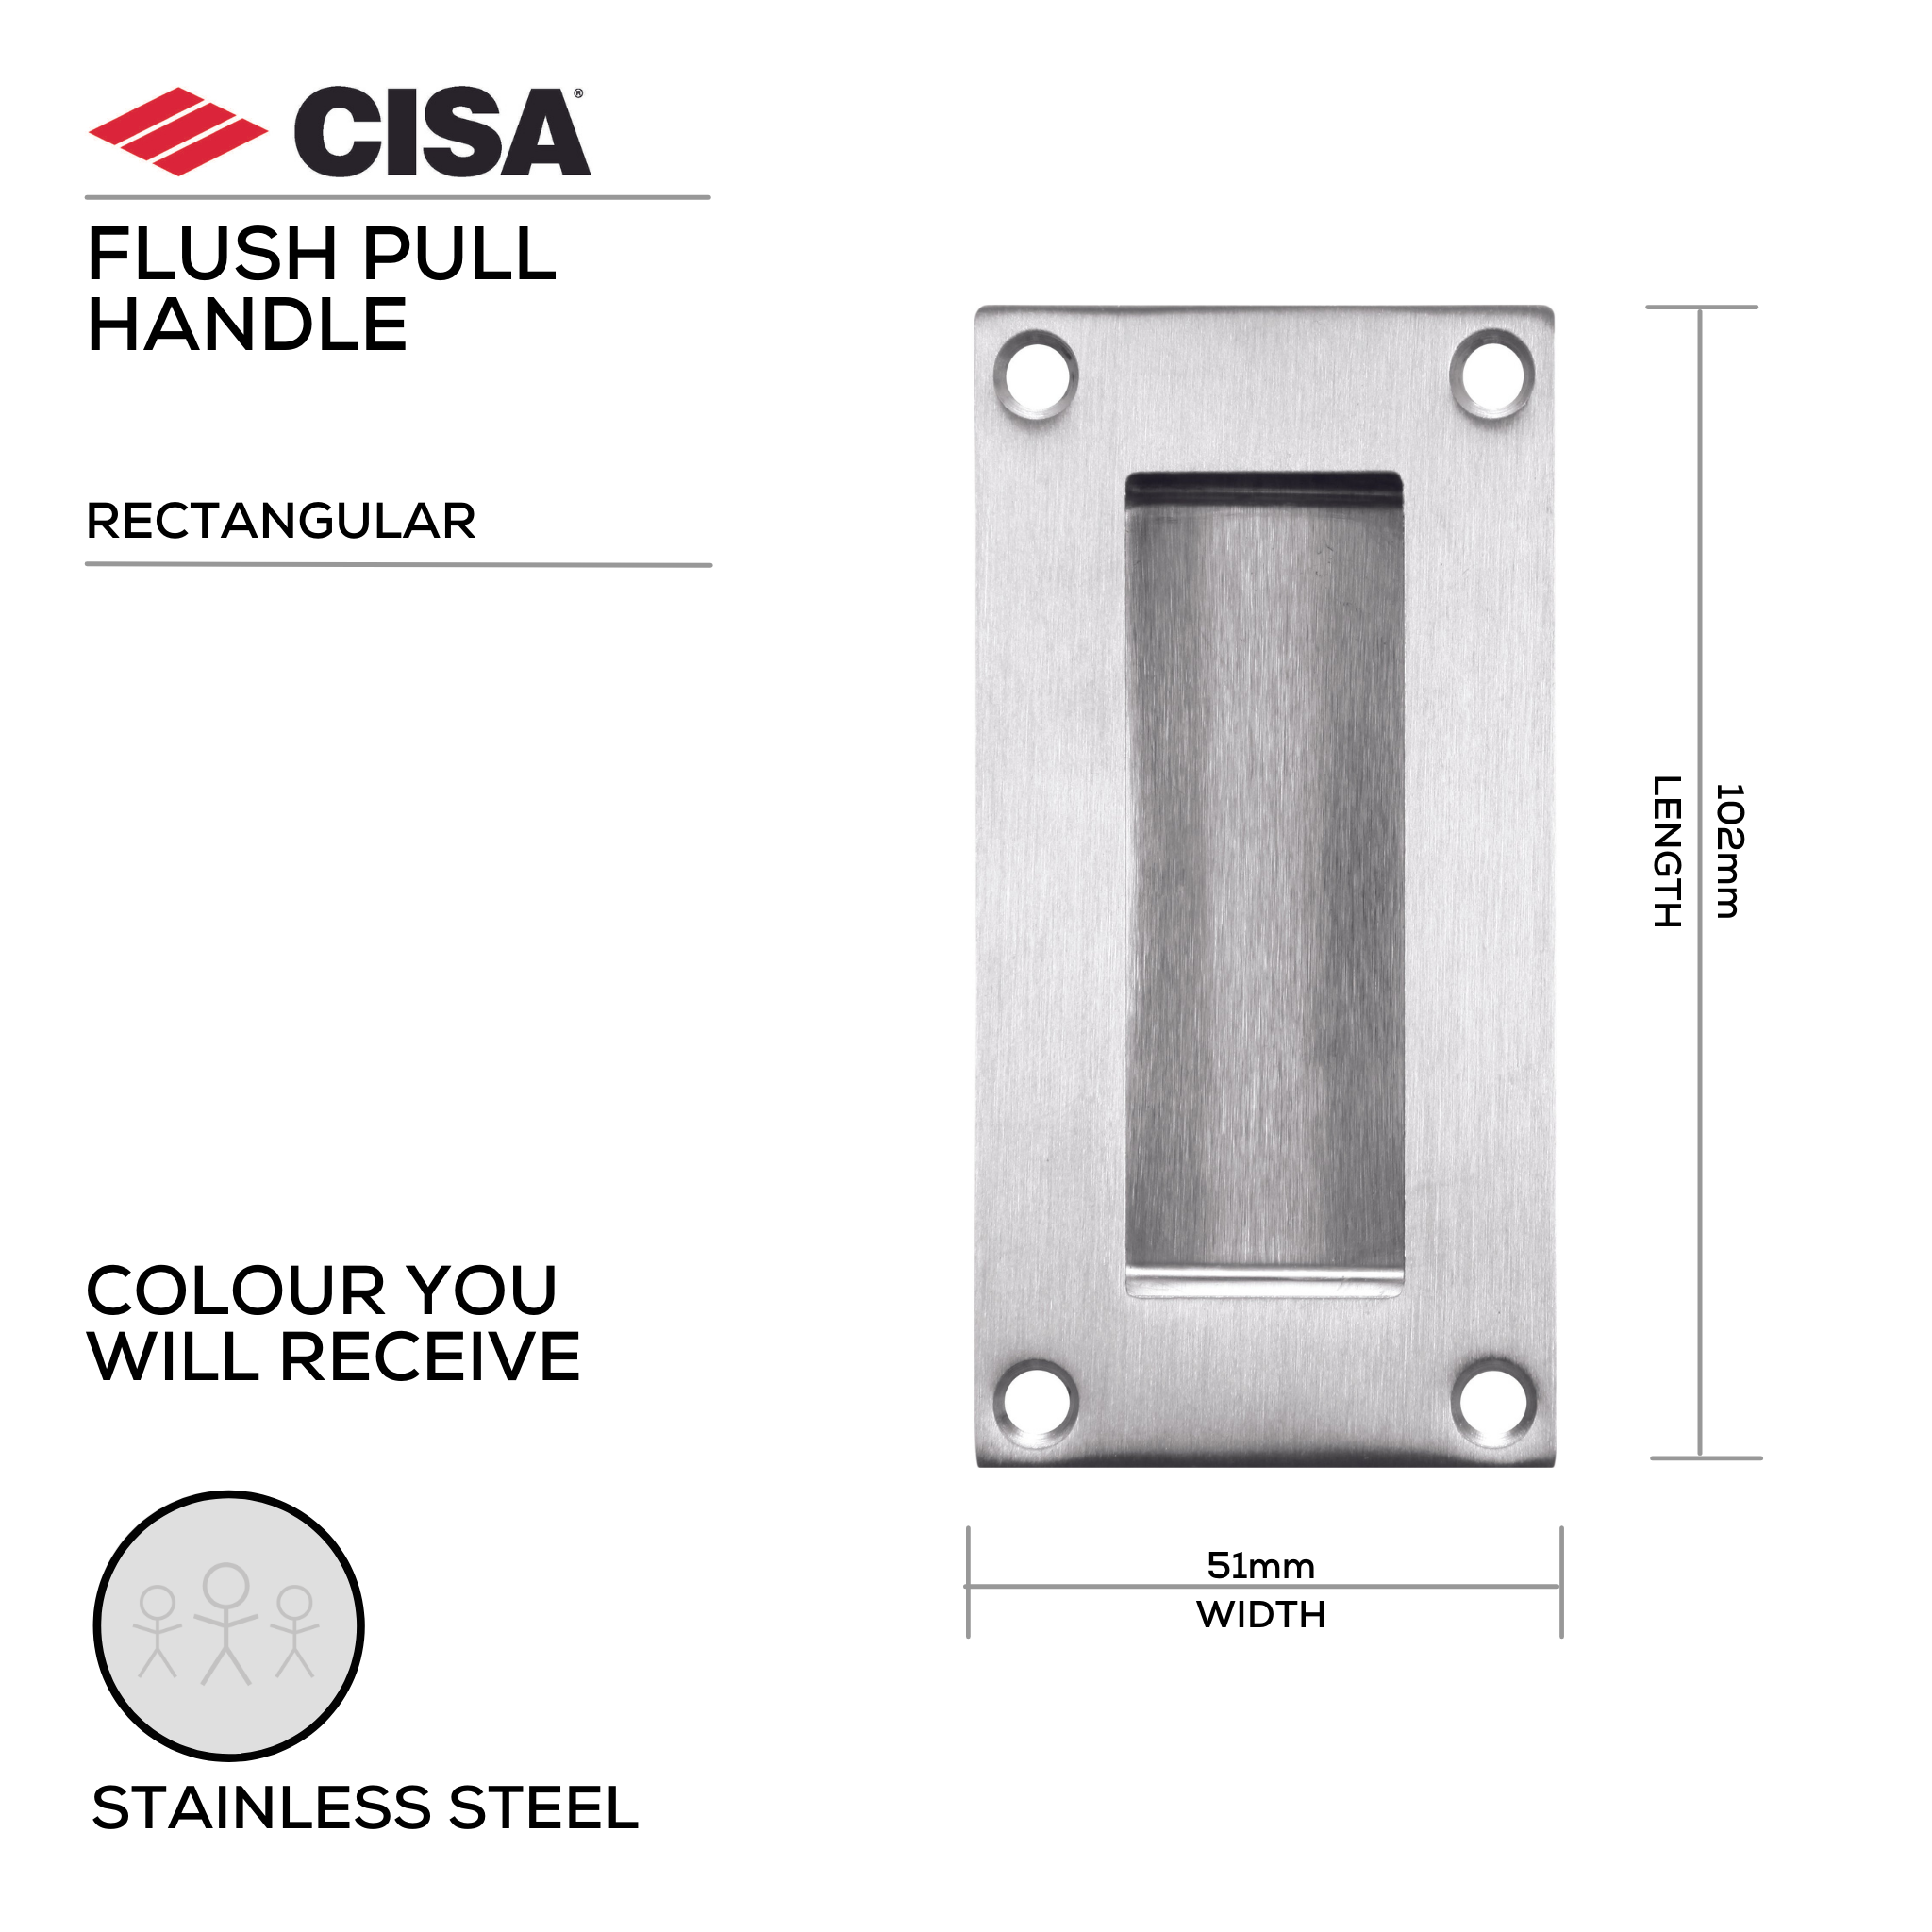 FP01.SS, Flush Pull, Rectangular, 102mm (l) x 51mm (w), Stainless Steel, CISA